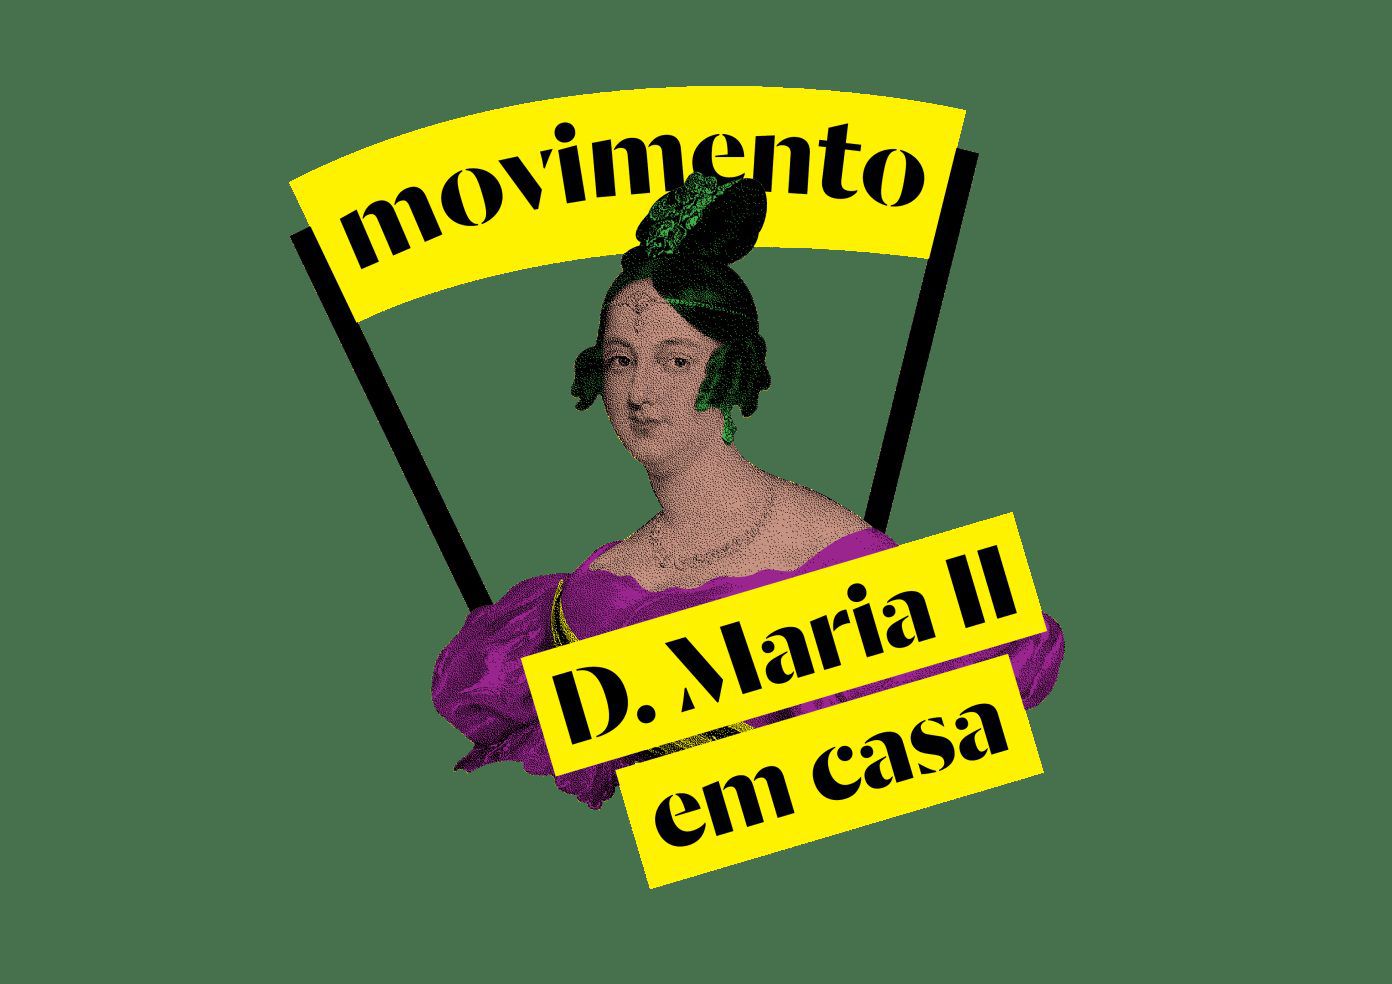 D. Maria II em casa: ir ao teatro sem sair do sofá